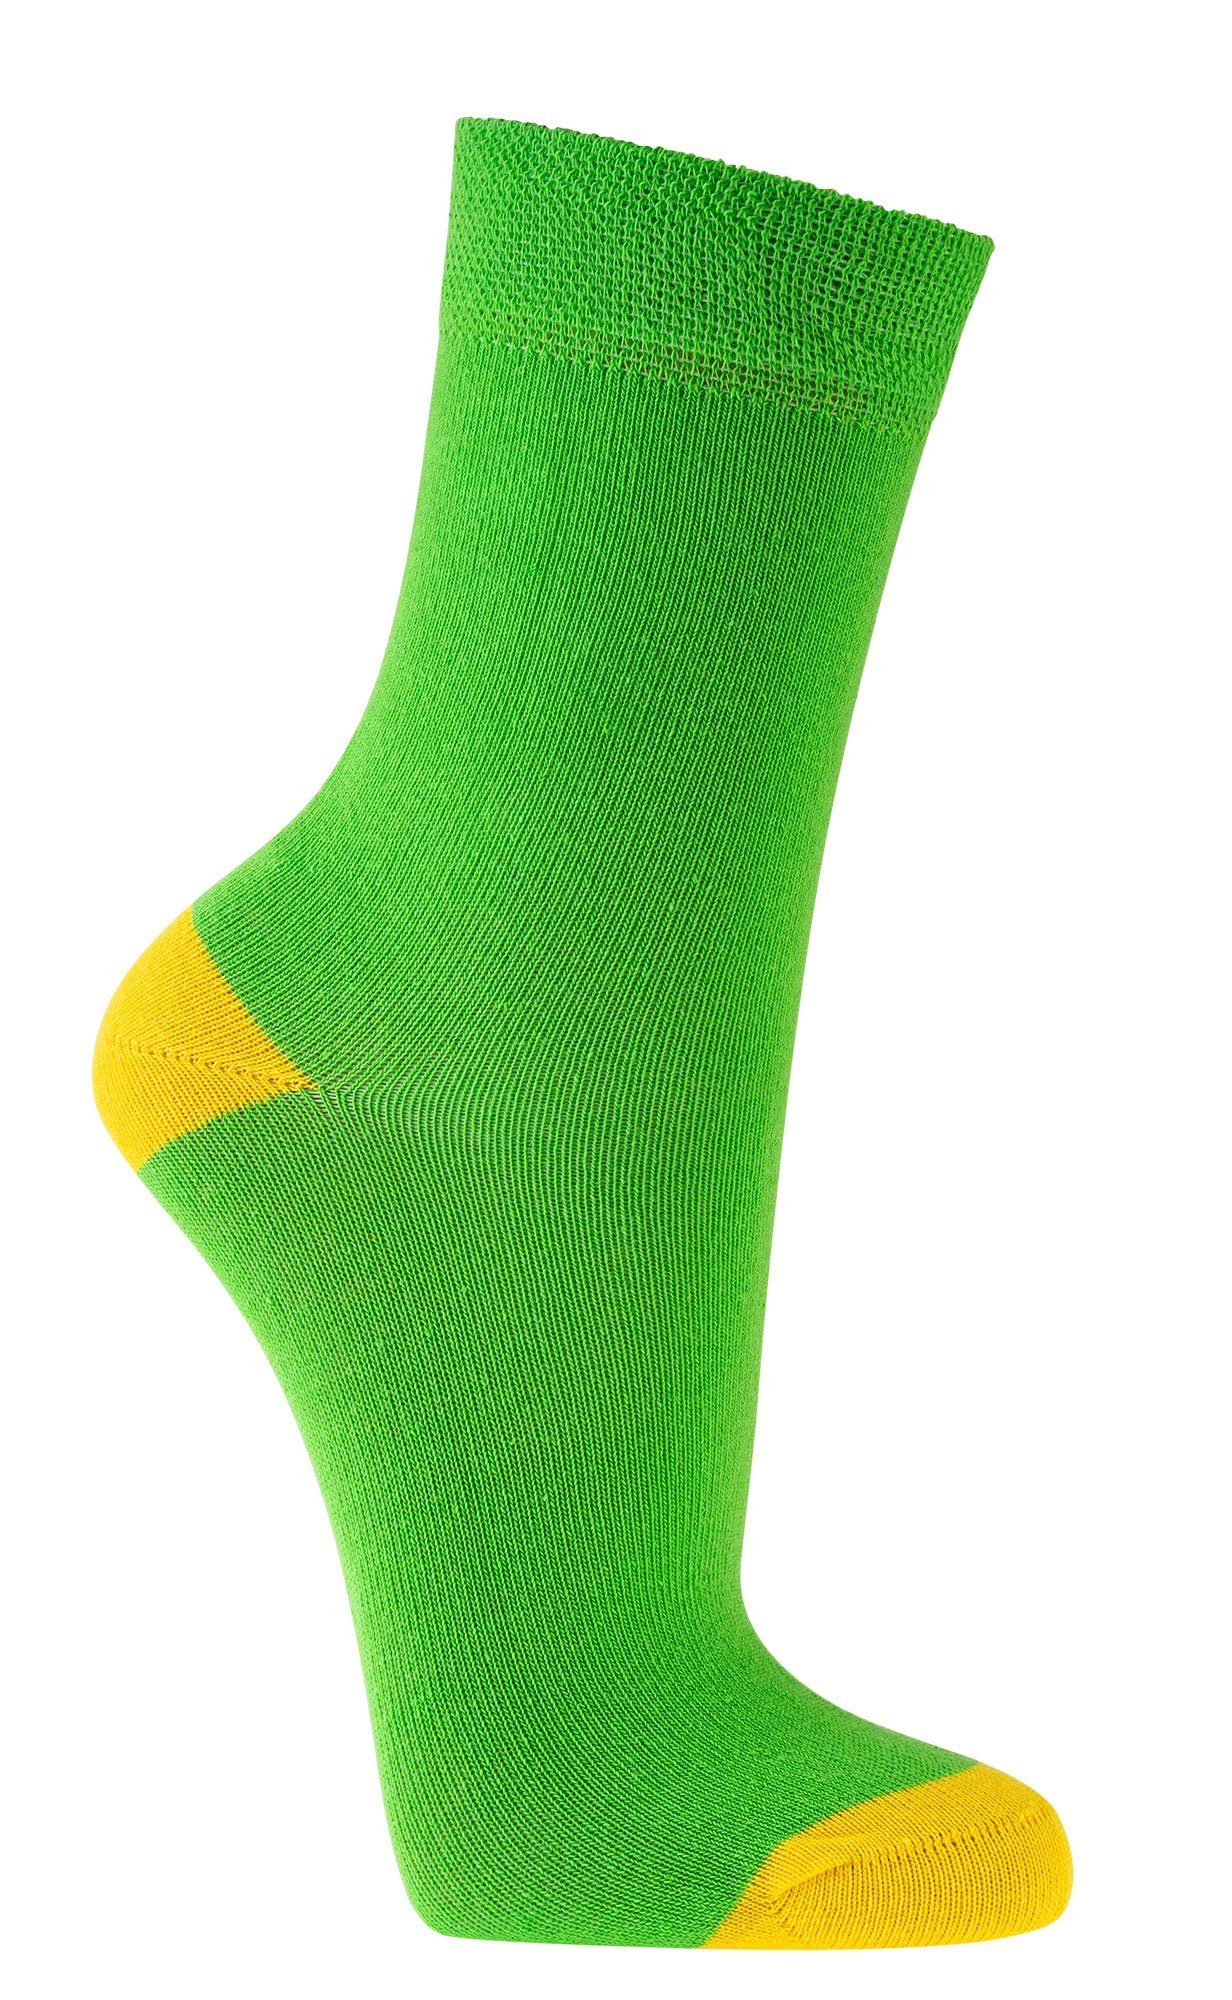 FussFreunde Socken 6 Paar Kinder für Mädchen Grün LAUNE Socken & Jungen, FARBEN GUTE